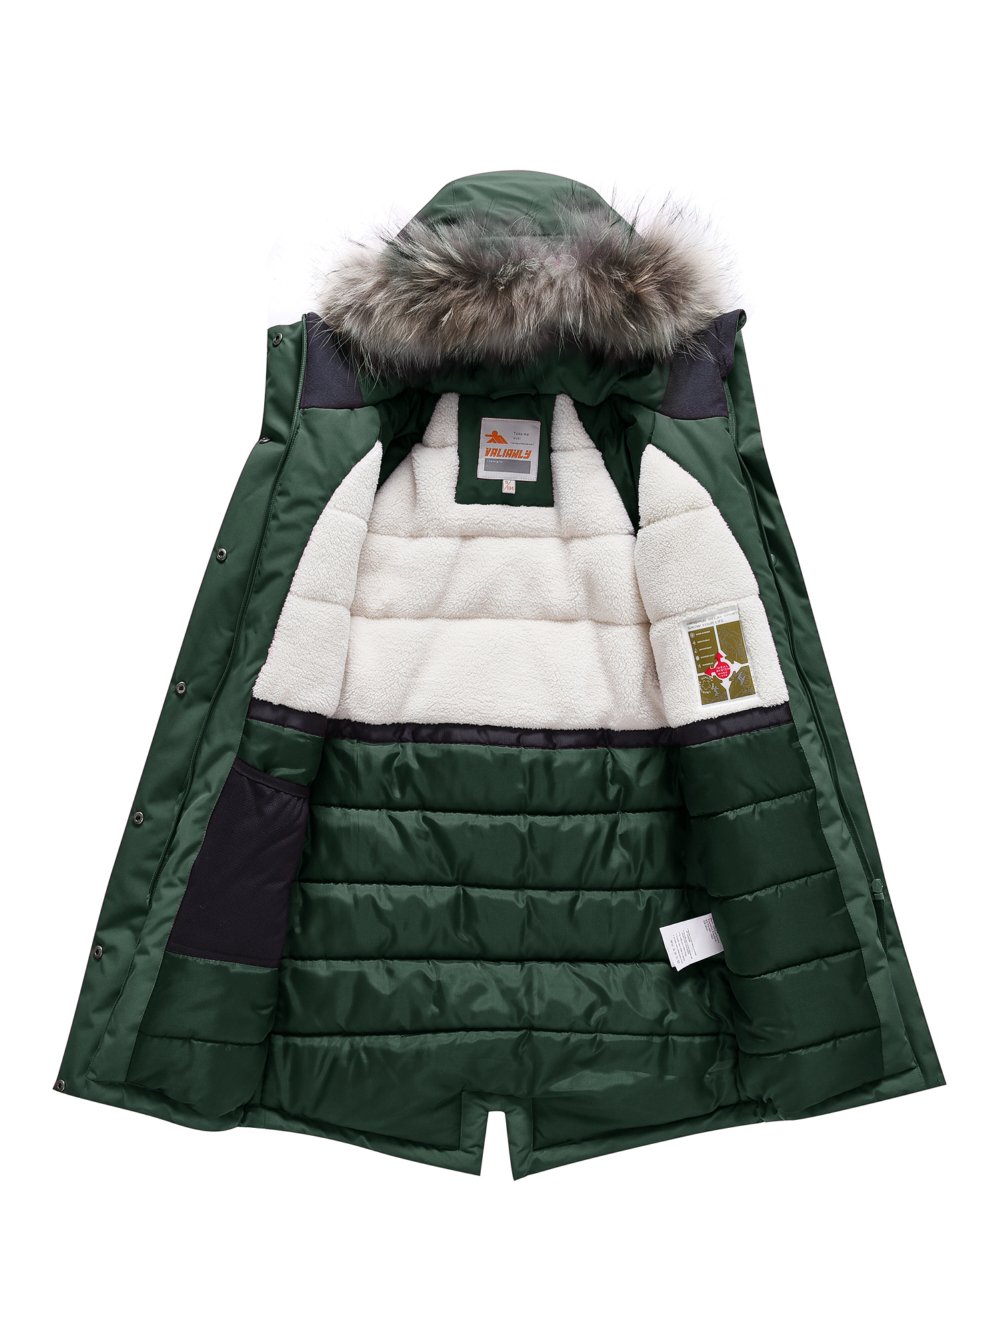 Купить куртку парку для девочки оптом от производителя недорого в Москве 9340TZ 1